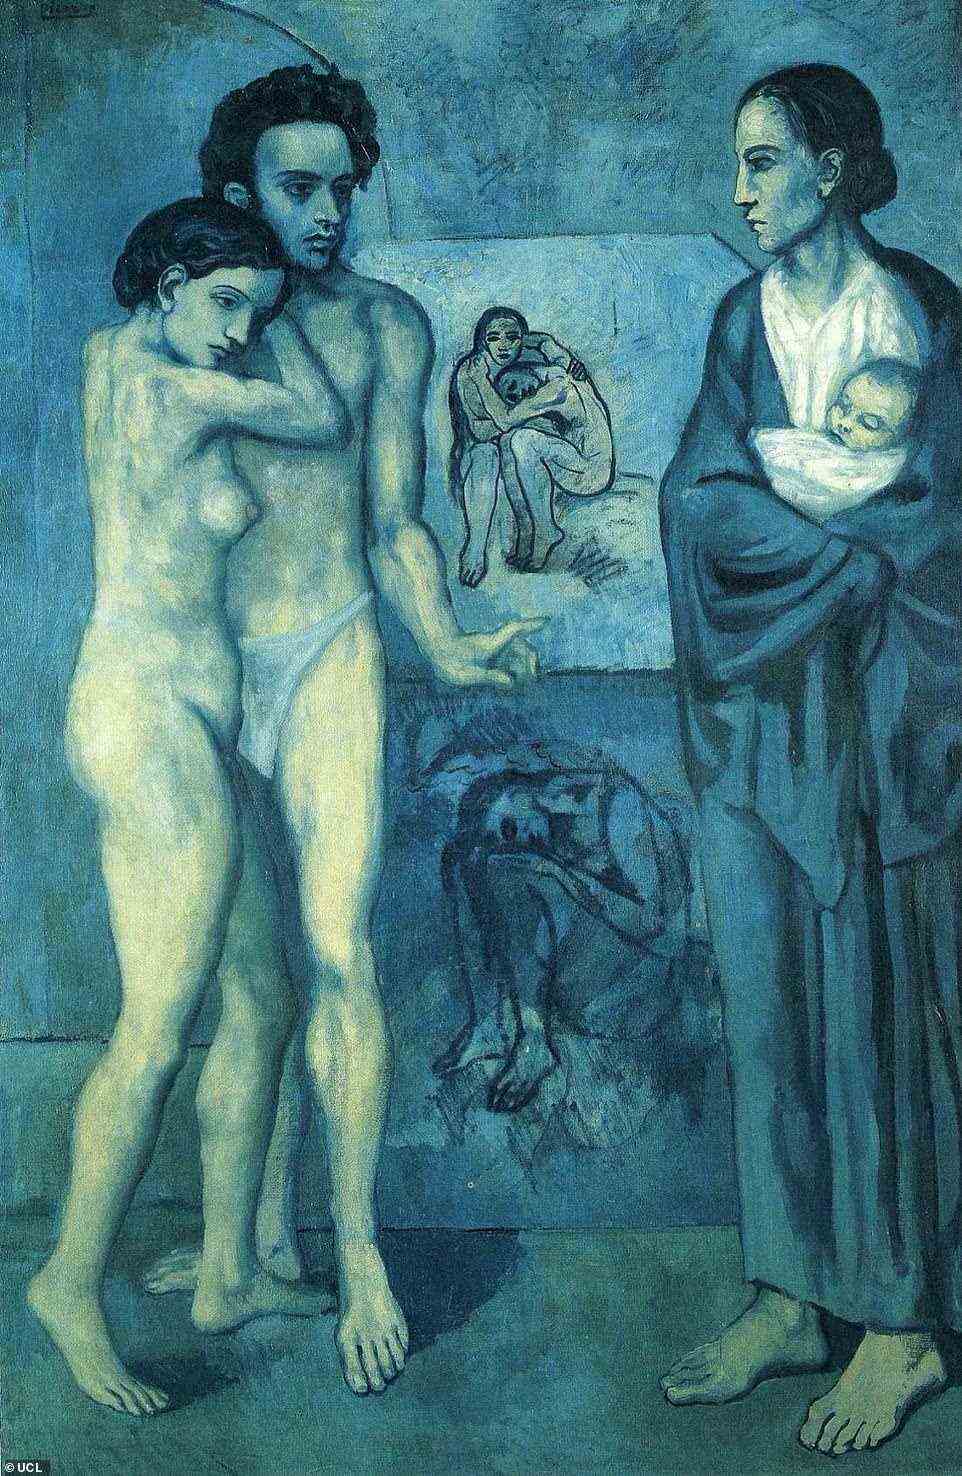 Die Entdeckung von 'The Lonesome Crouching Nude' im Jahr 2010 beendete eine lange Suche nach dem verschollenen Werk ¿ bekannt durch die Darstellung im Hintergrund von 'La Vie', einem zeitgenössischen Ölgemälde von Picasso (im Bild), das weithin als der Höhepunkt seiner 